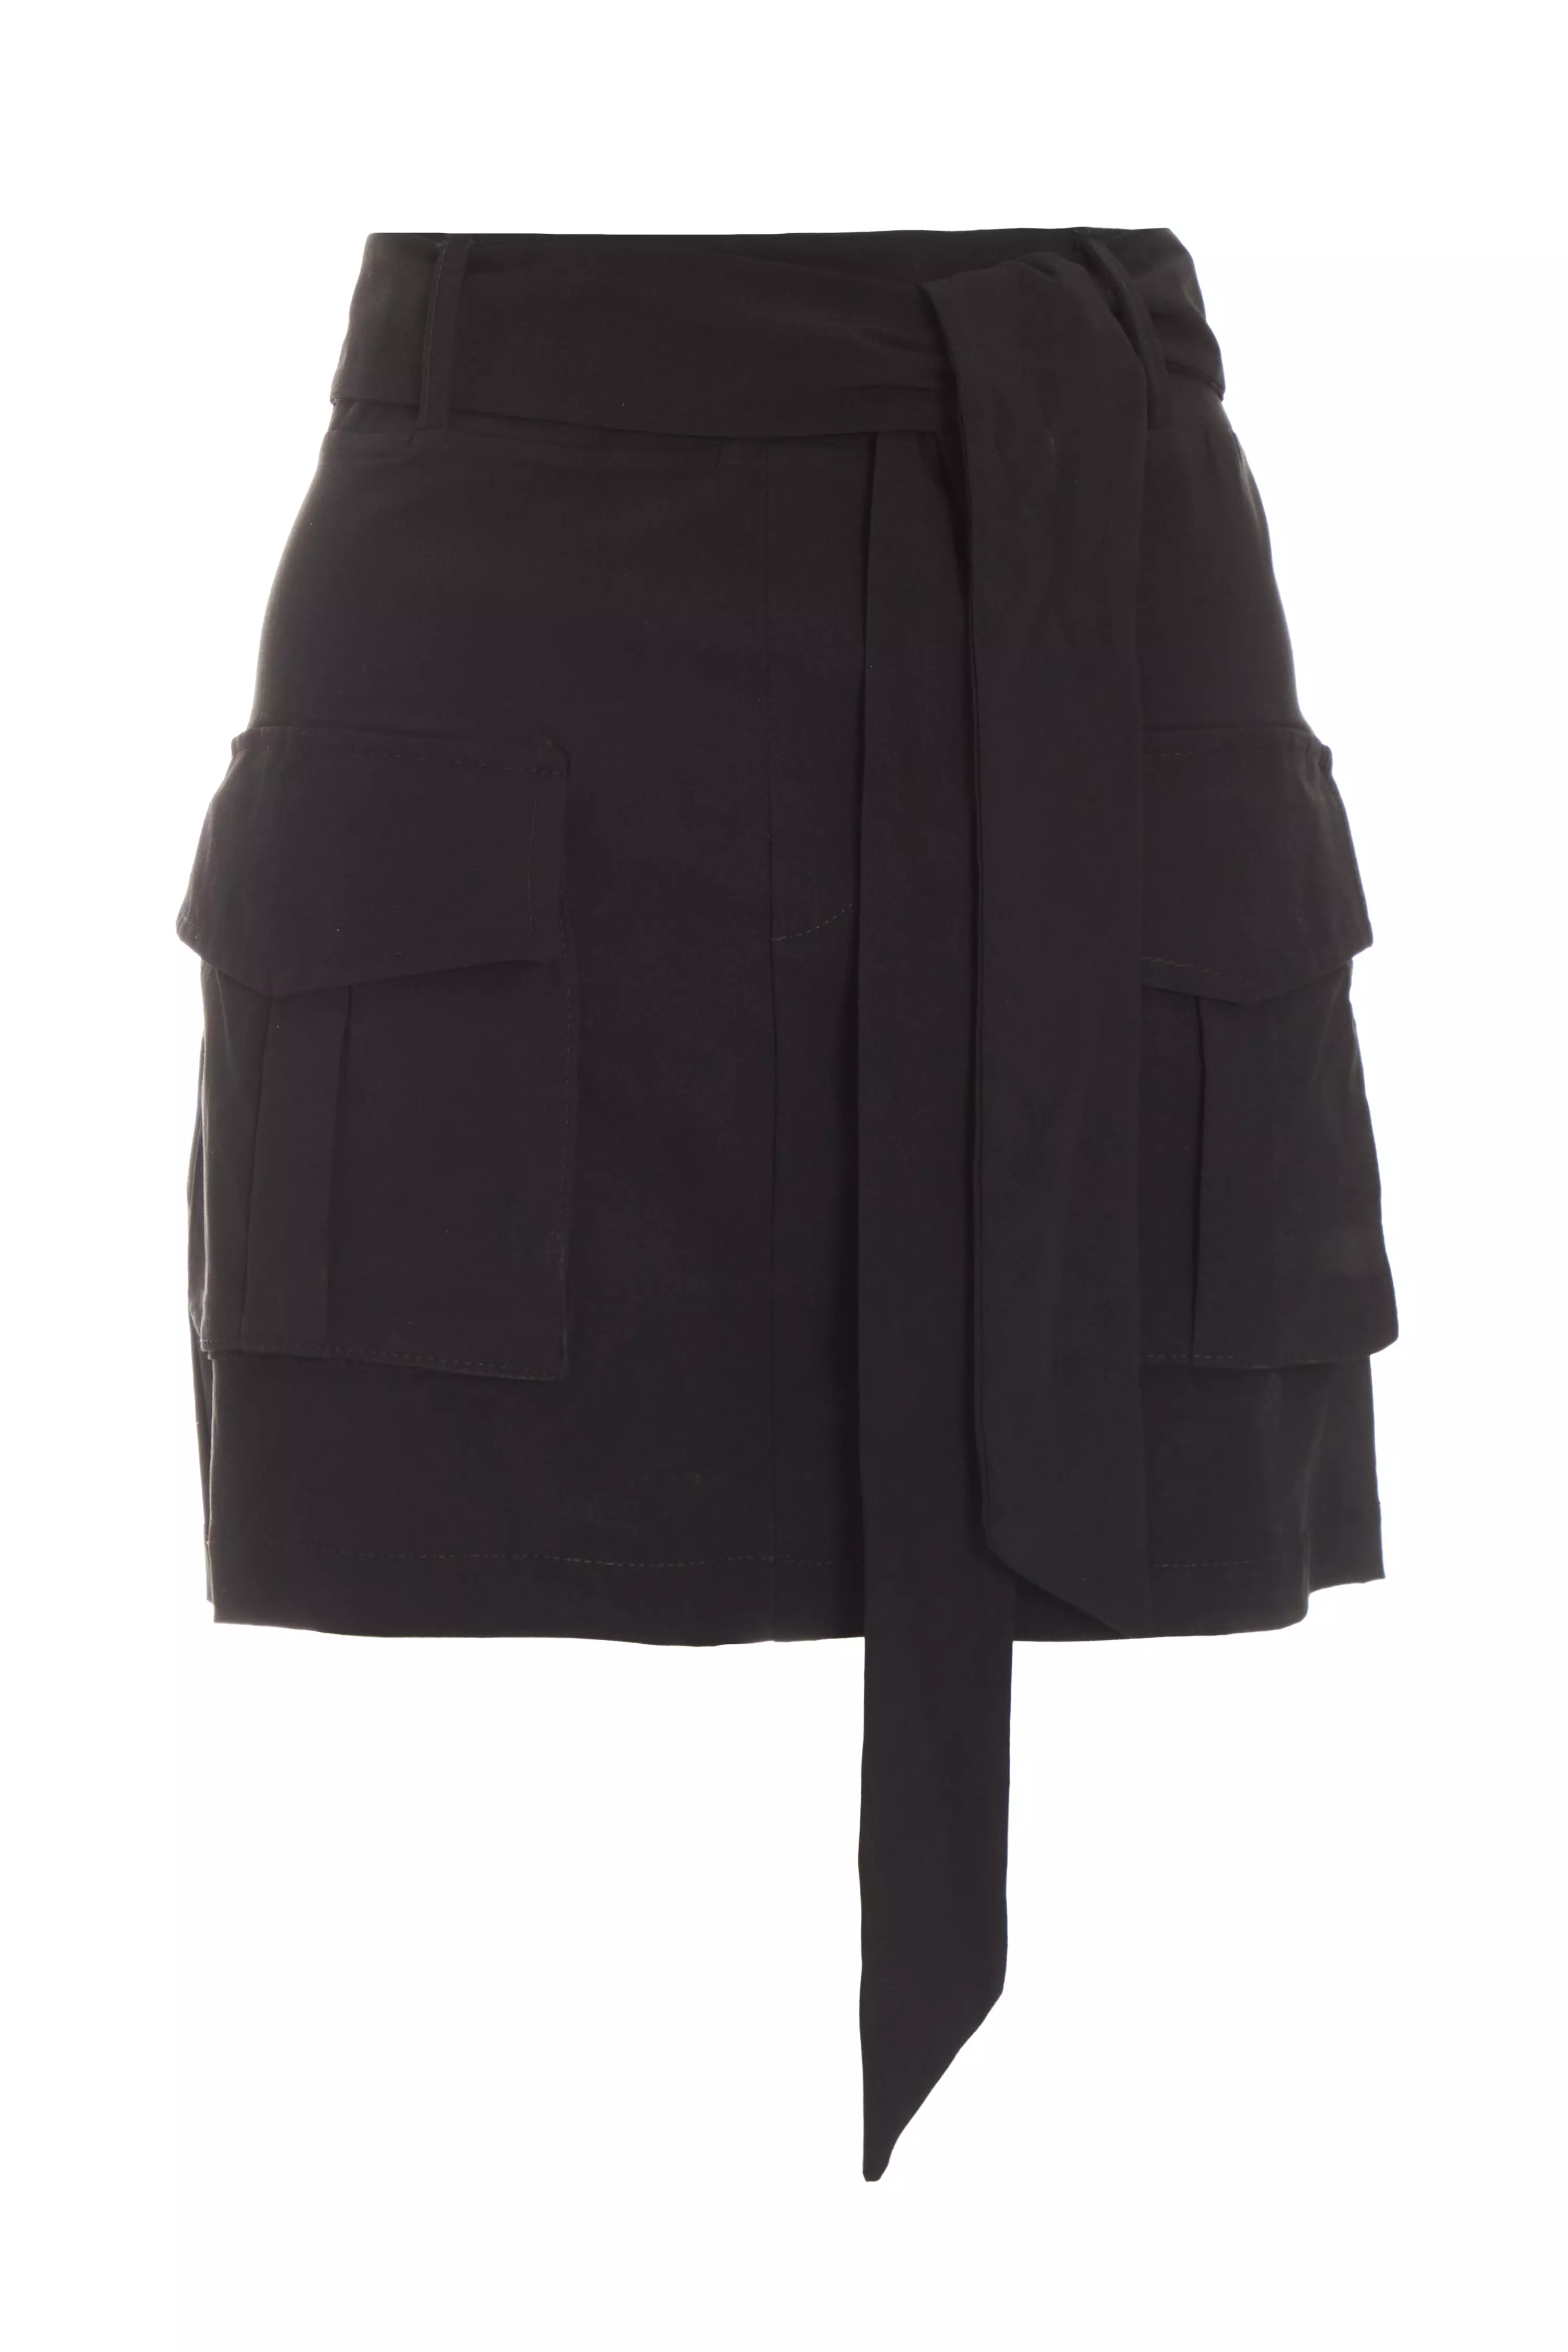 Black Cargo Mini Skirt